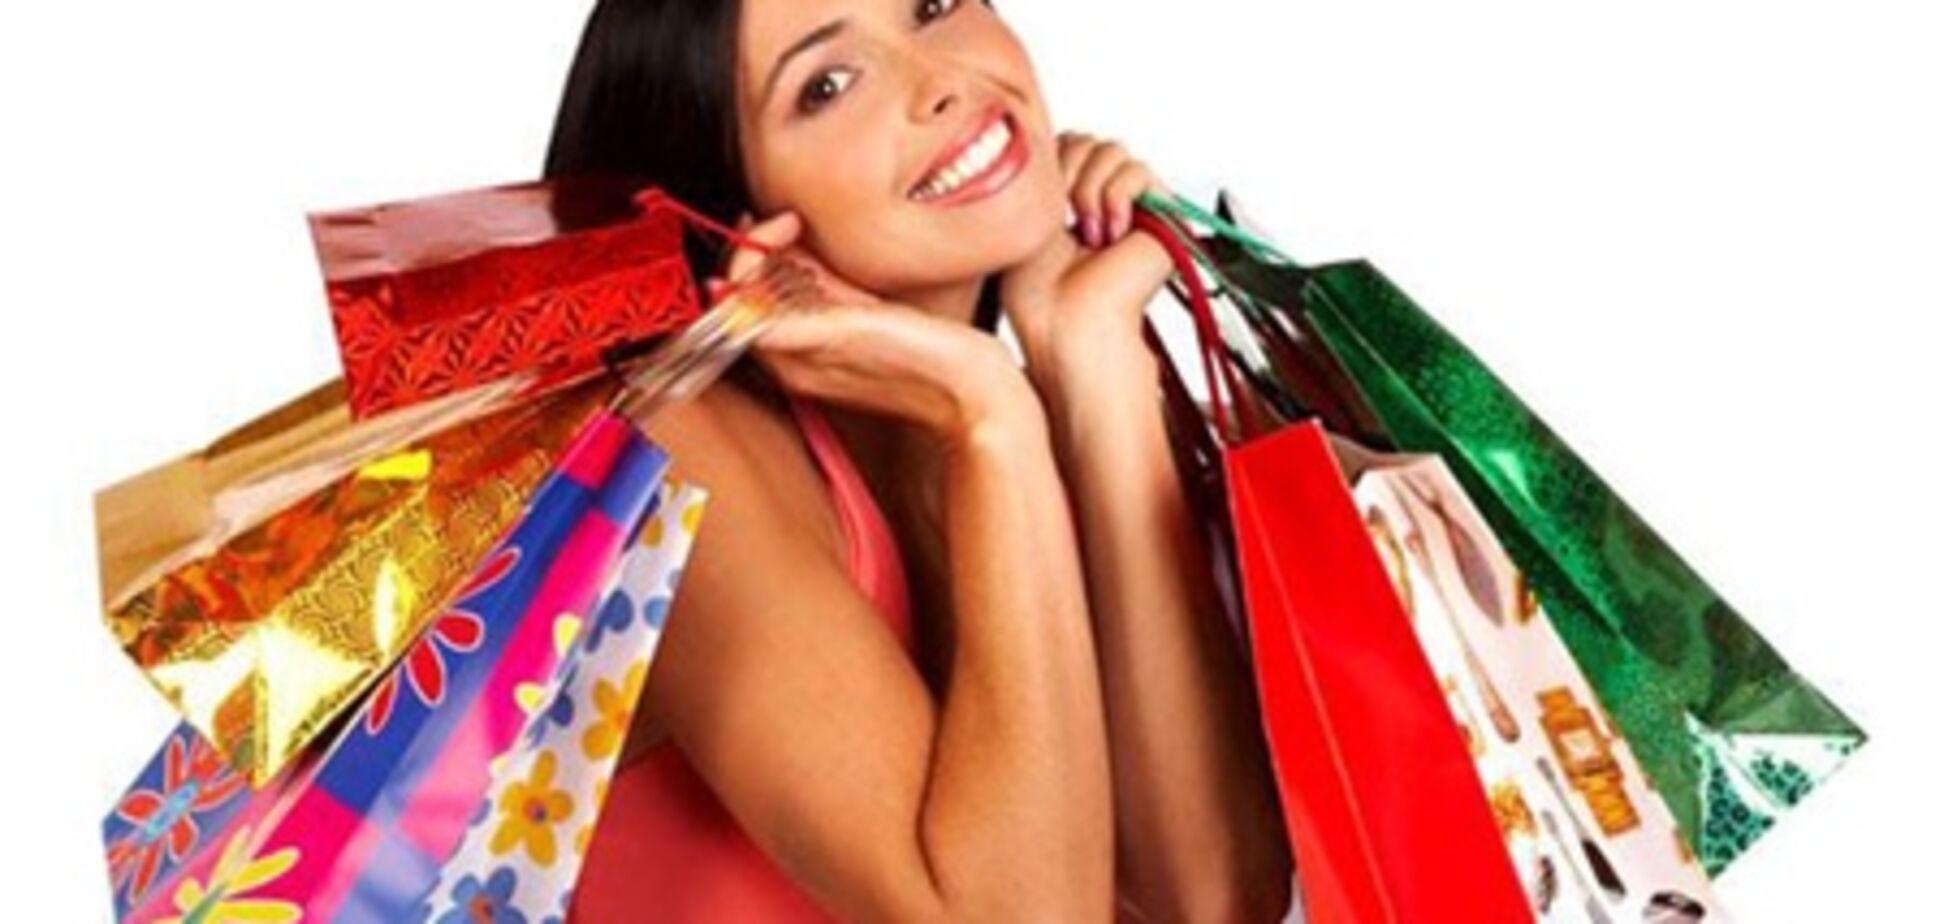 Купоны для aliexpress – фактор максимальной экономии при покупках онлайн